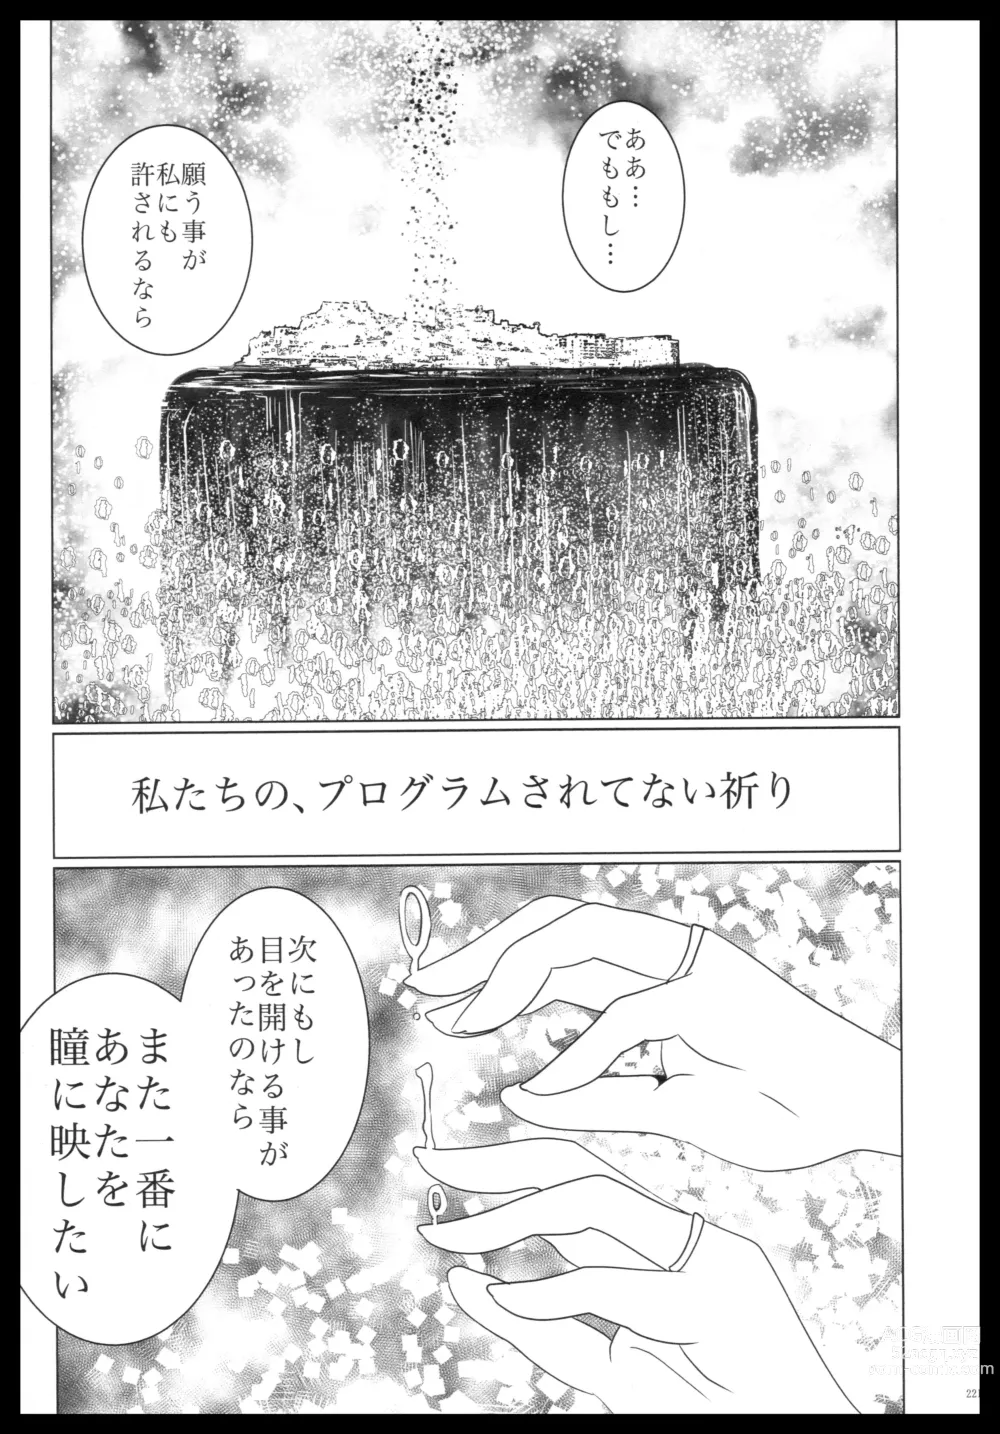 Page 220 of doujinshi Akagi x Kaga Shinkon Shoya Anthology - 1st bite ~Hokori no Chigiri~